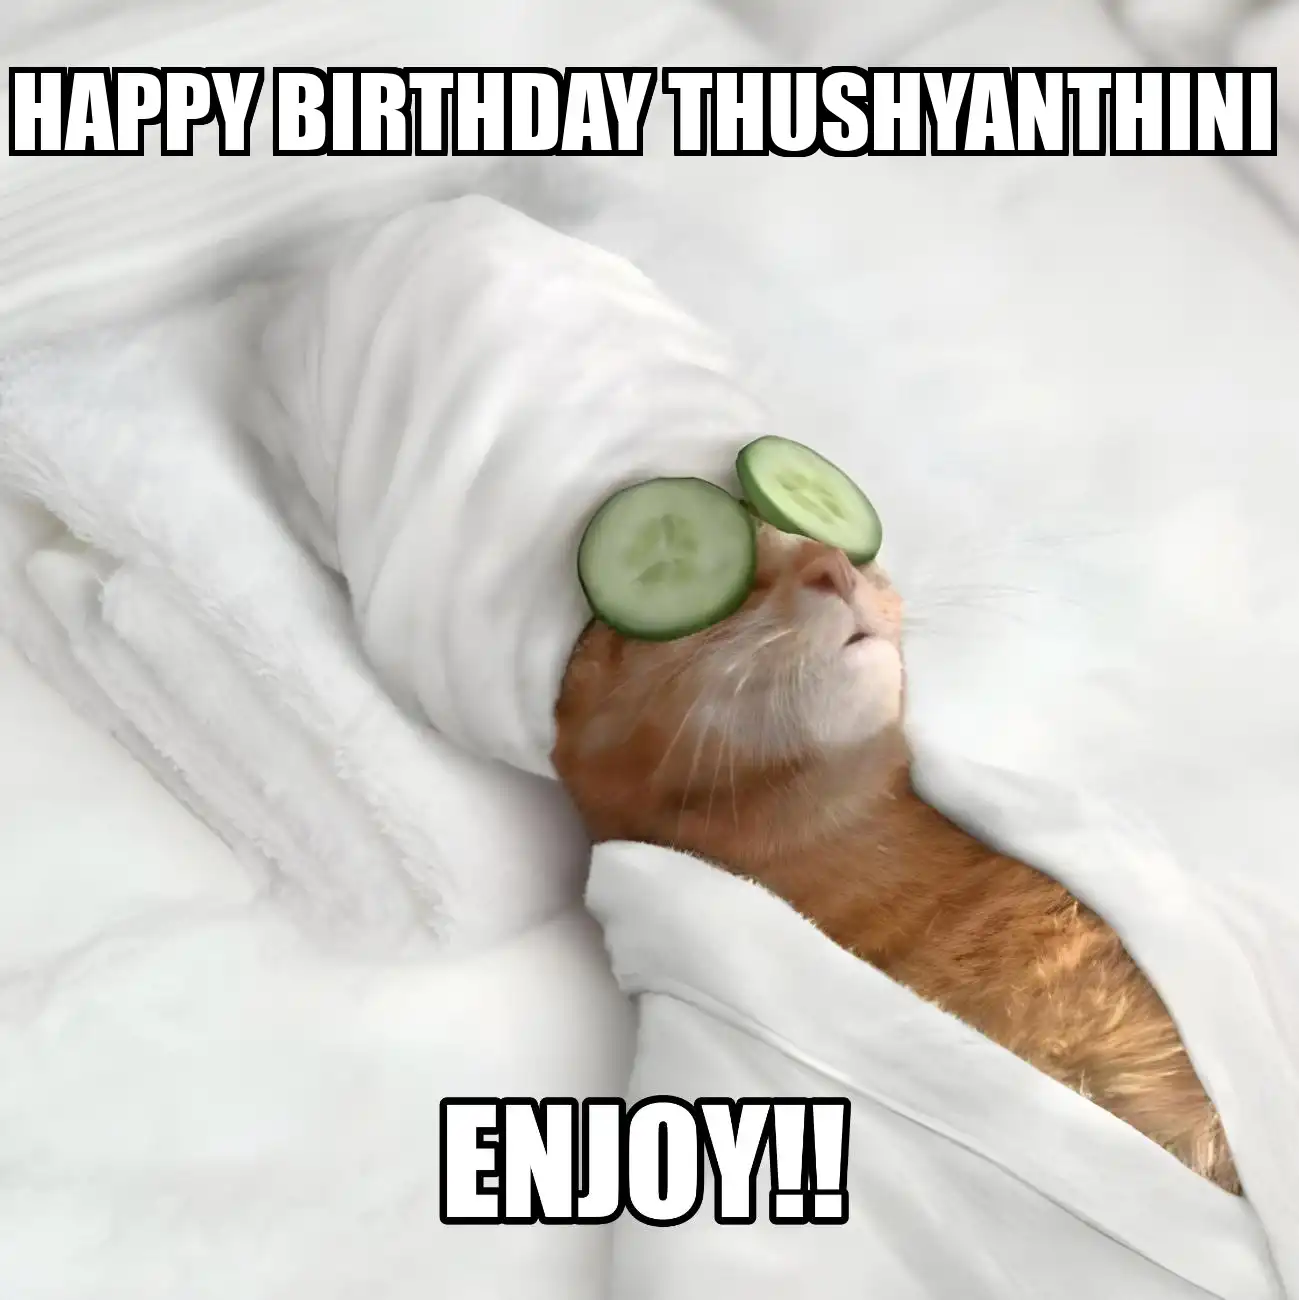 Happy Birthday Thushyanthini Enjoy Cat Meme